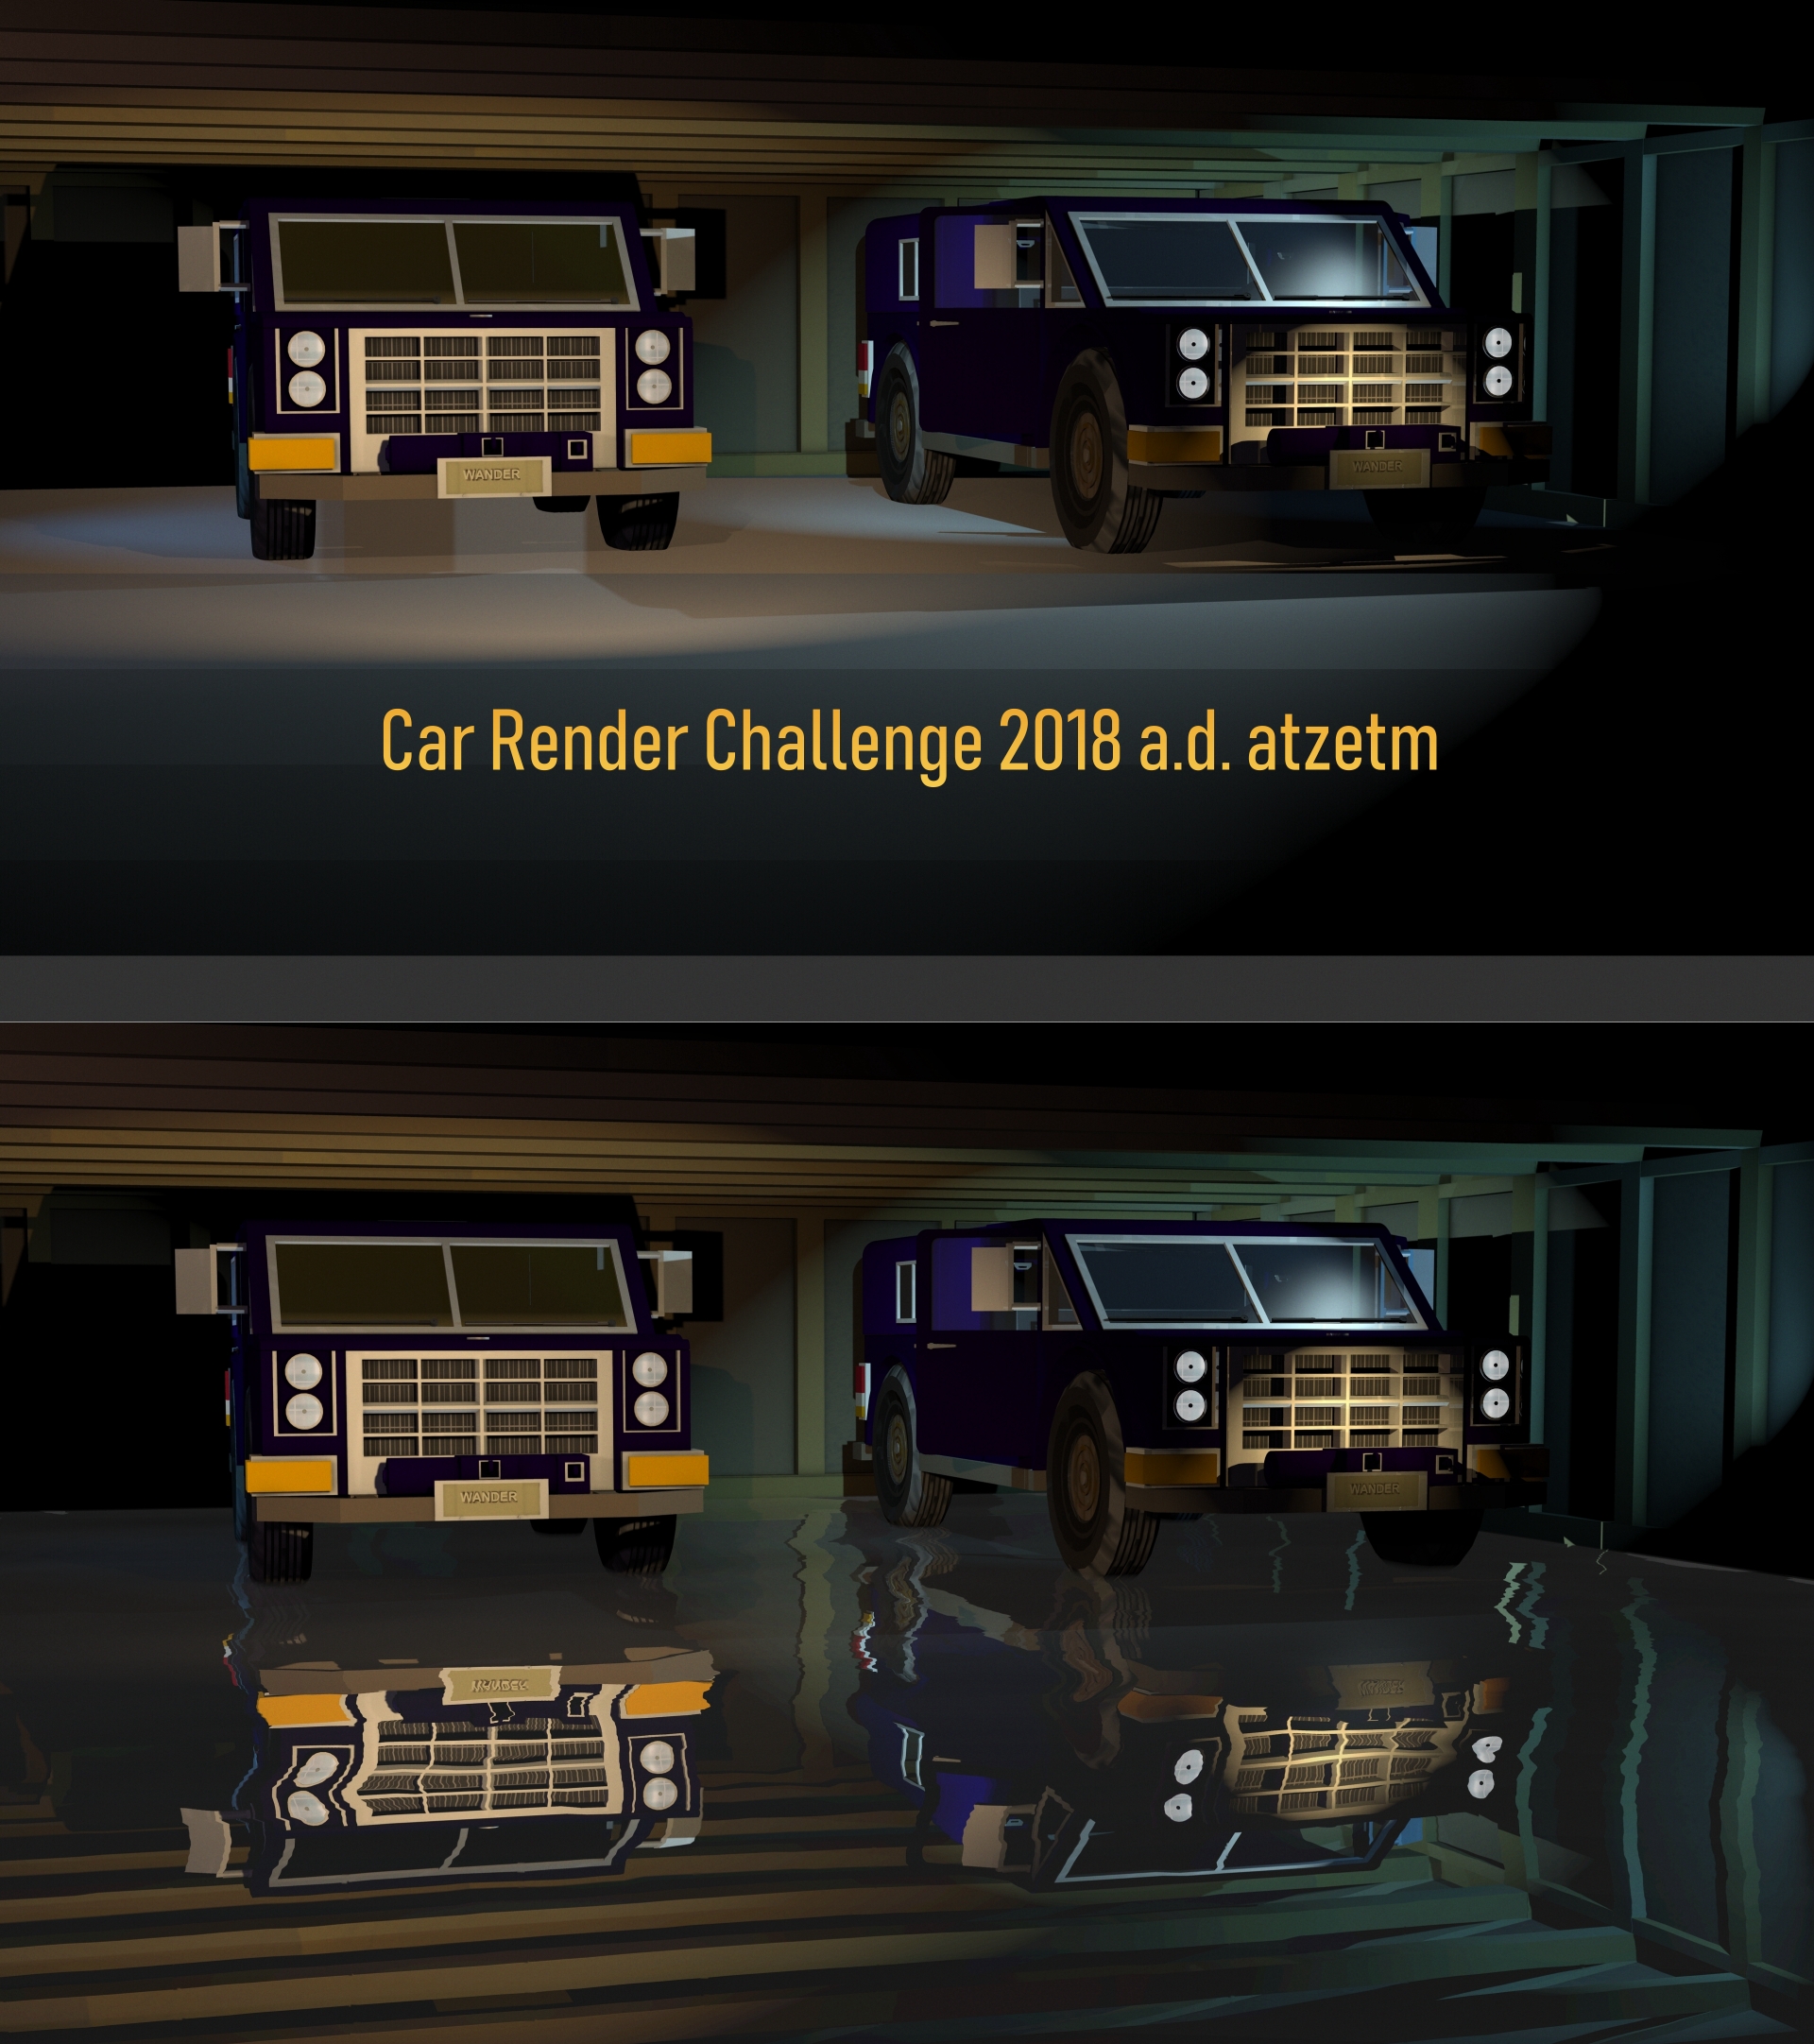 Car Render Challenge 2018 atzetm